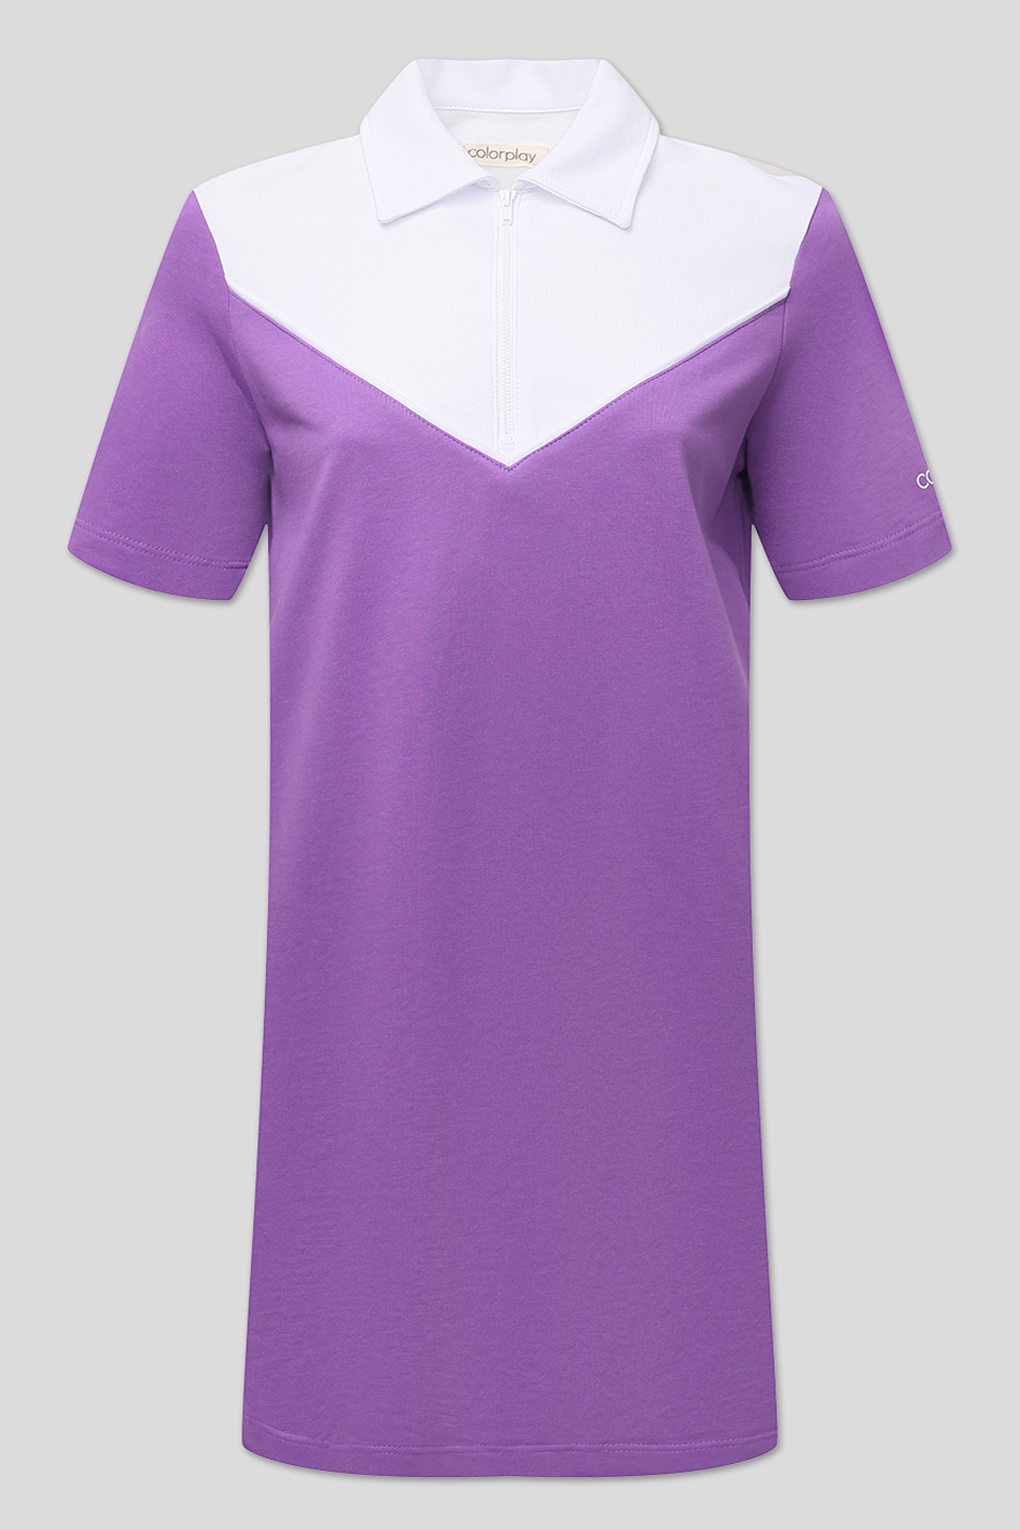 Платье женское COLORPLAY CP22045279-018 фиолетовое M